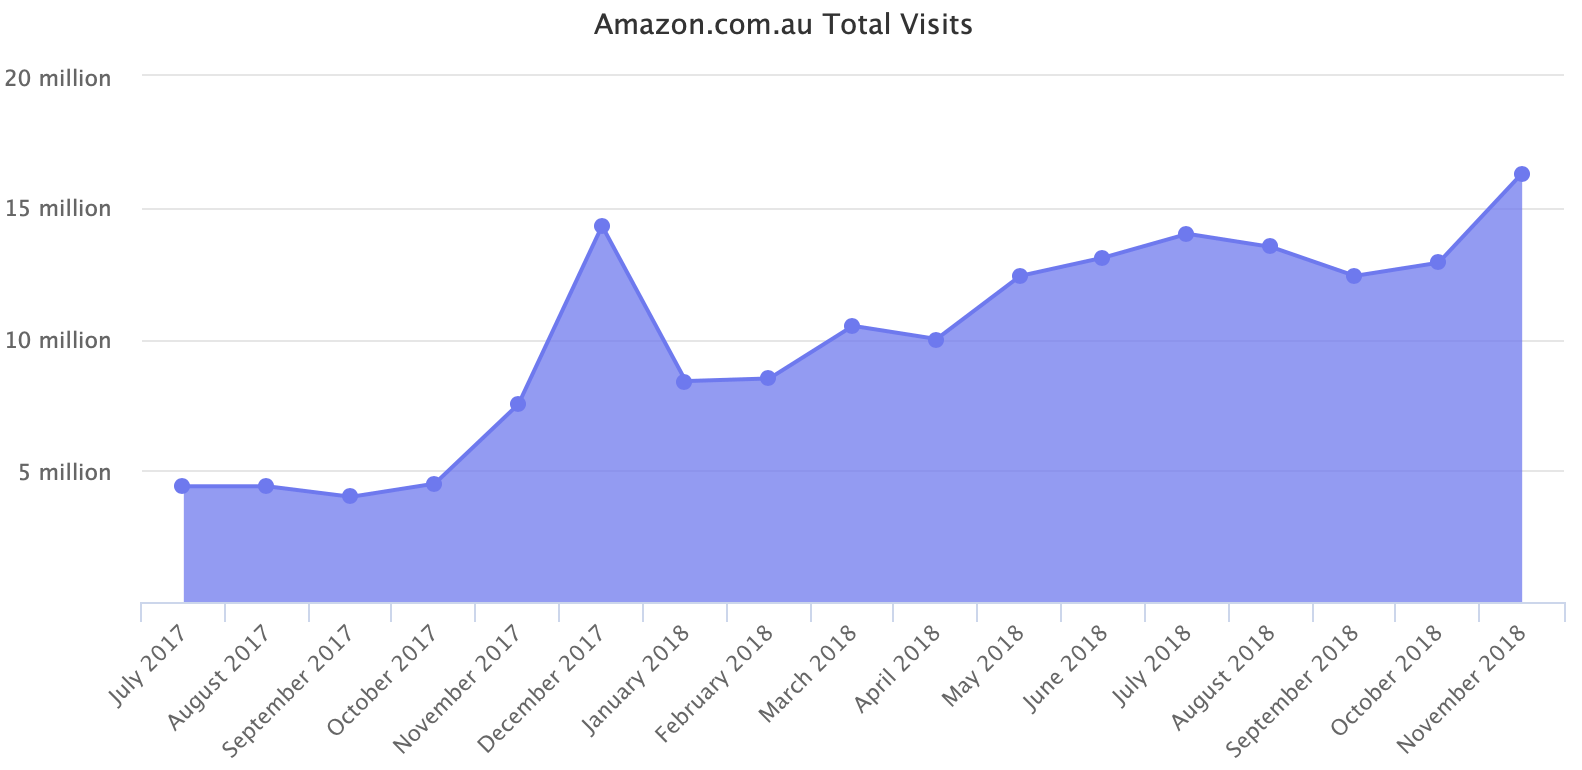 Amazon.com.au Total Visits